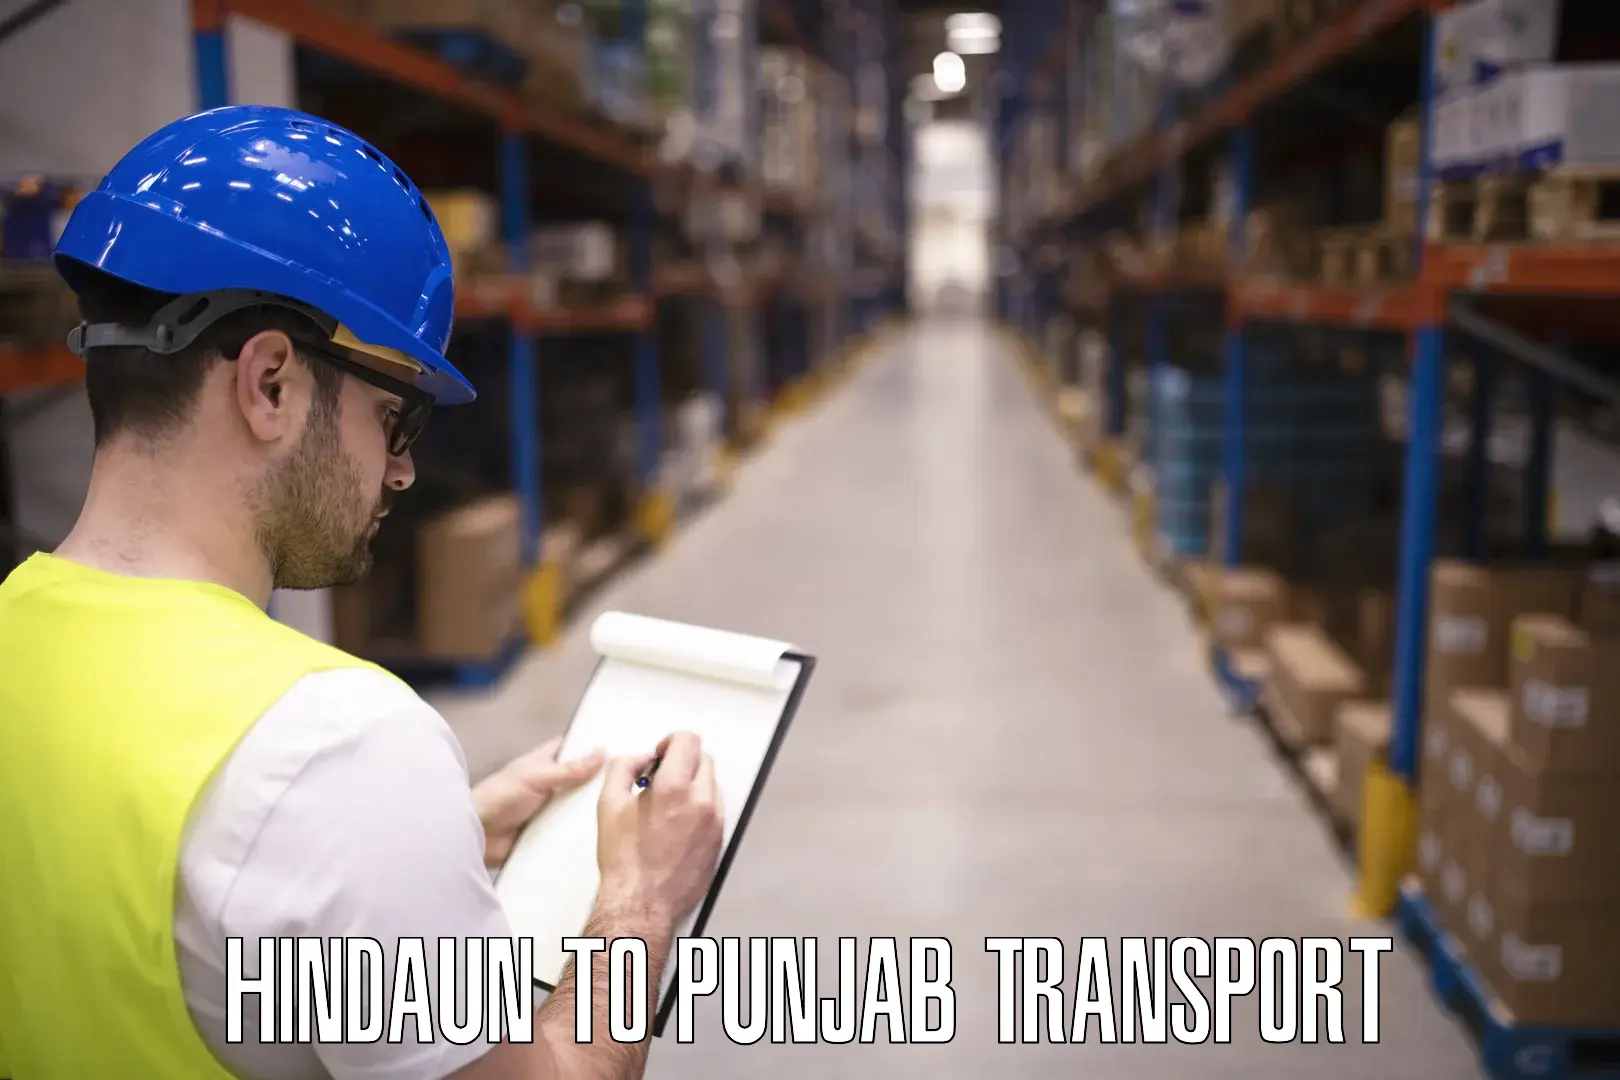 Lorry transport service Hindaun to Punjab